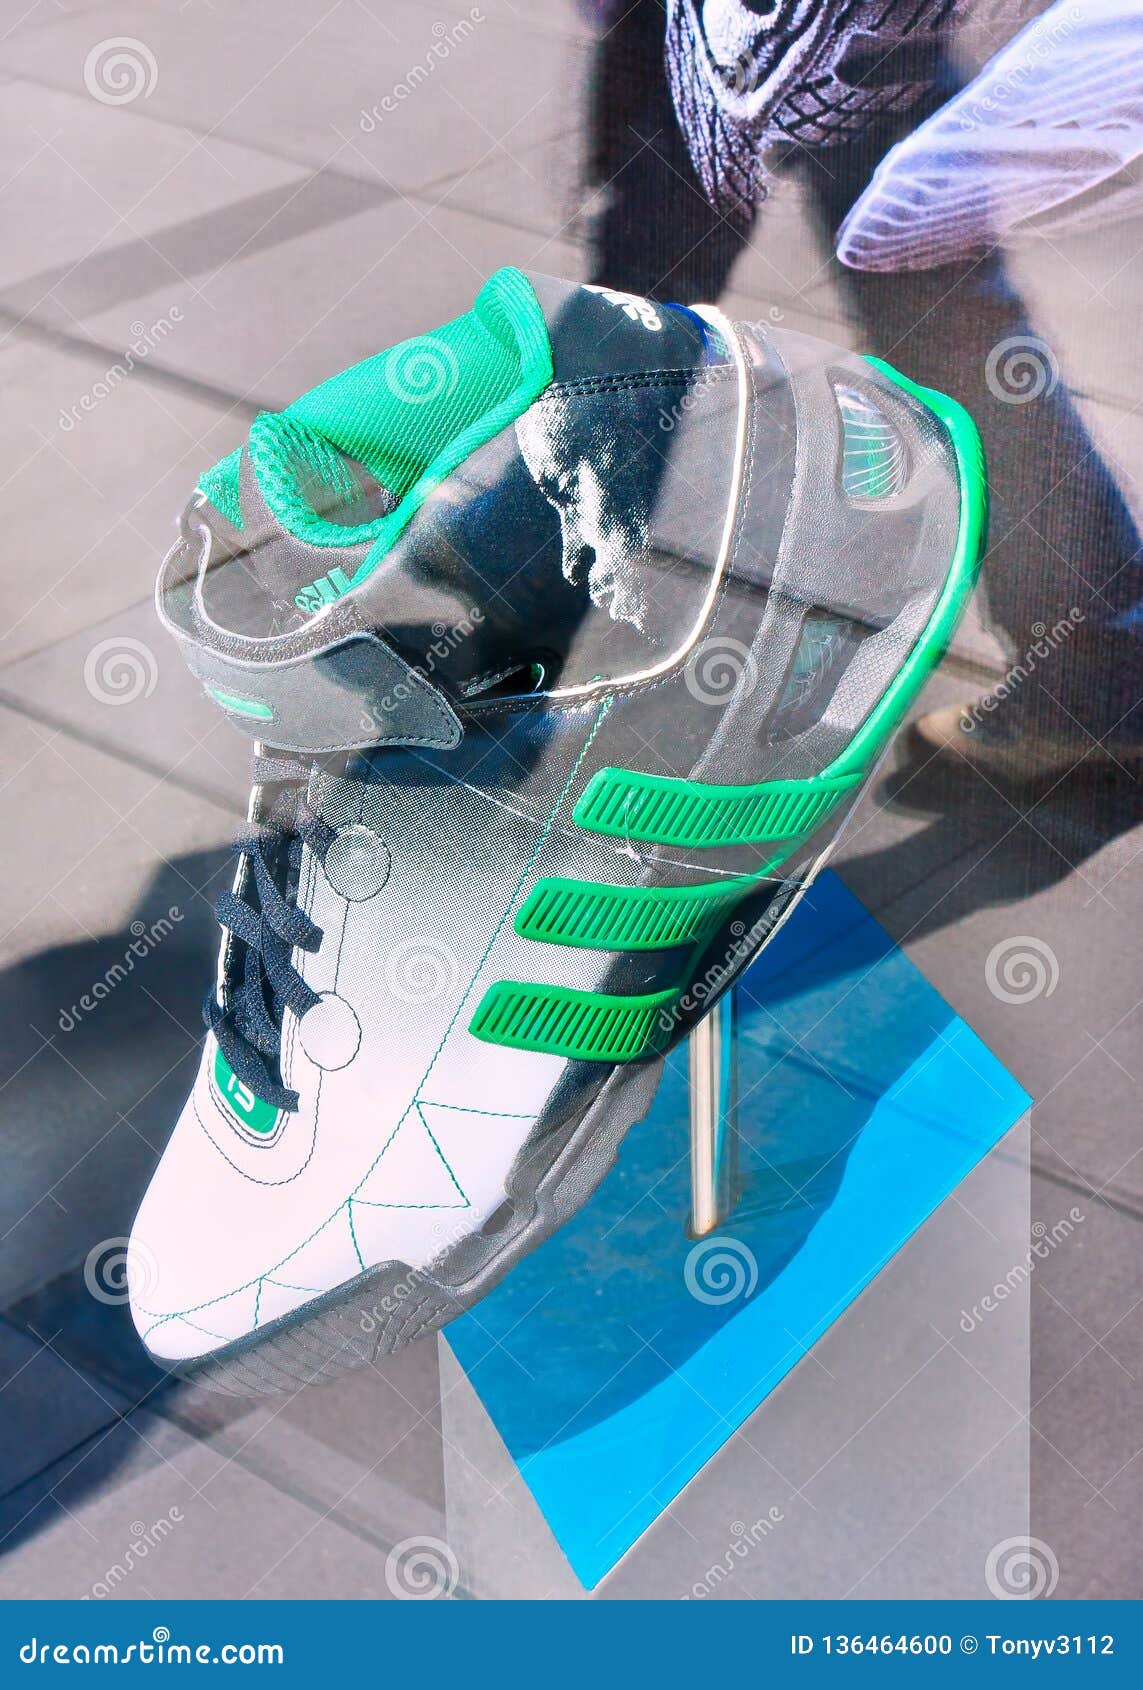 El Zapato De Los Deportes De Adidas Exhibió En Una Ventana Con La Reflexión De Cristal, Pekín, China editorial - Imagen de minorista, marca: 136464600